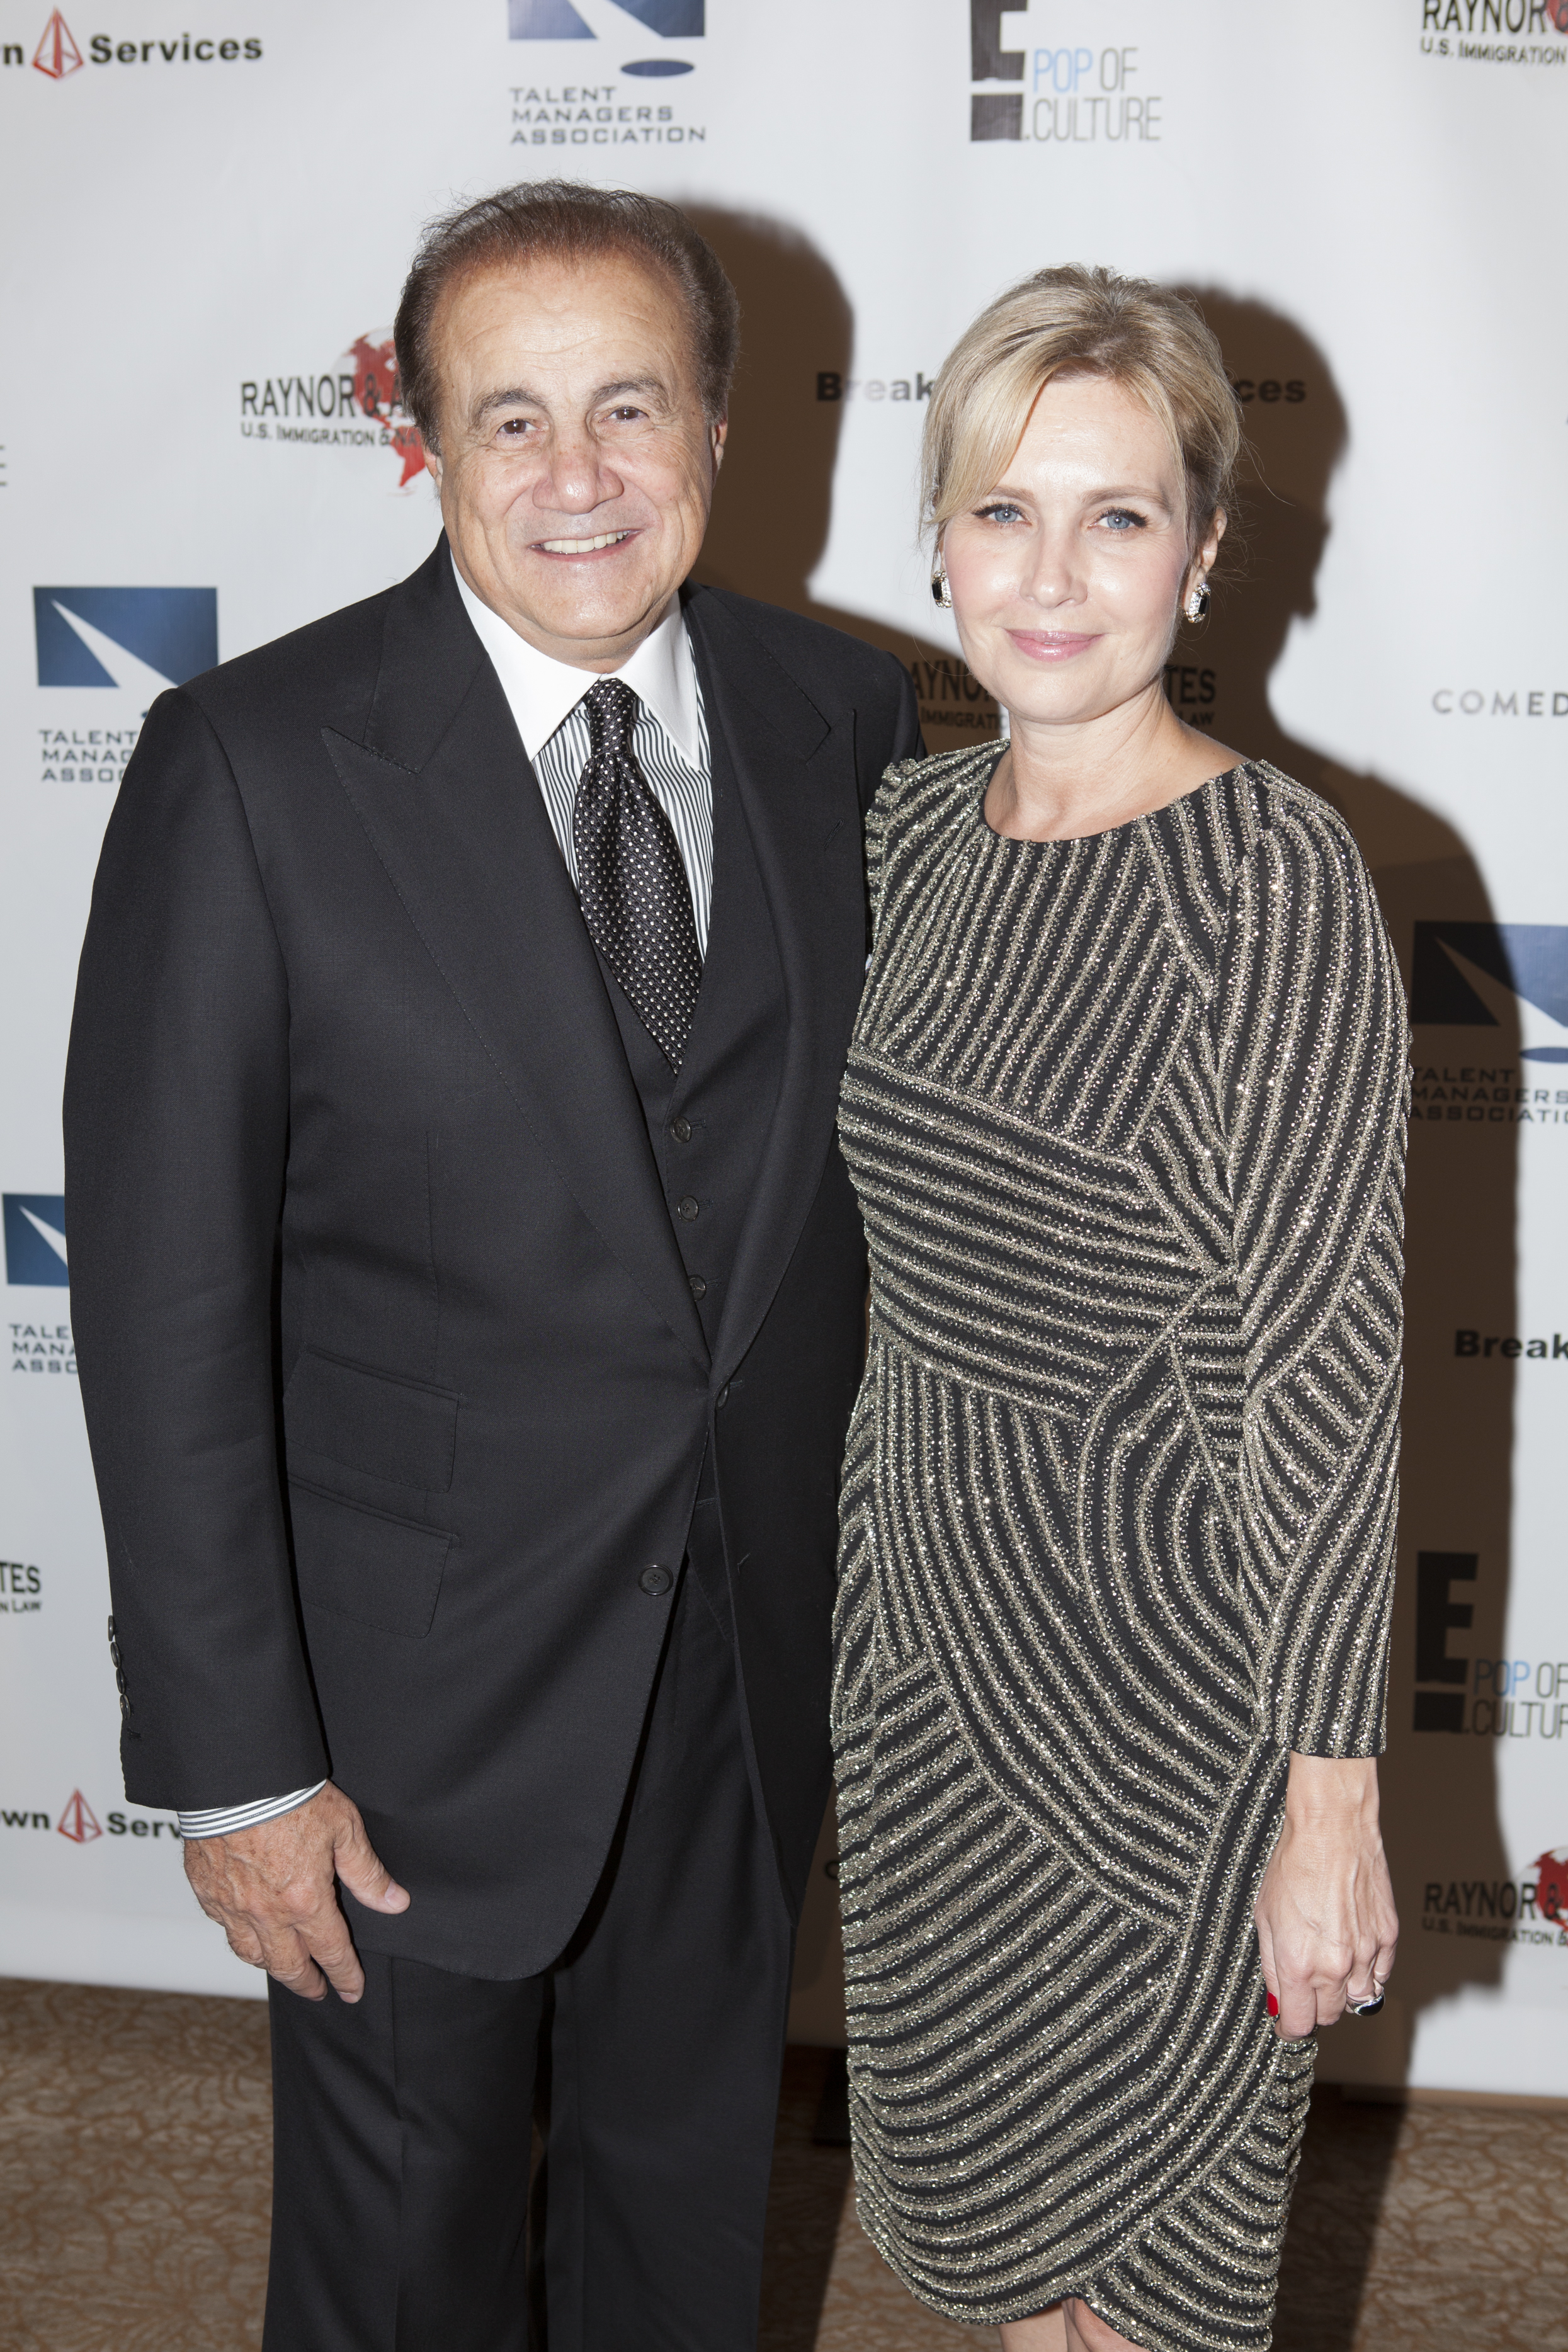 Larry and Kelly Thompson at Heller Awards - TMA Heller Awards - September 19, 2013